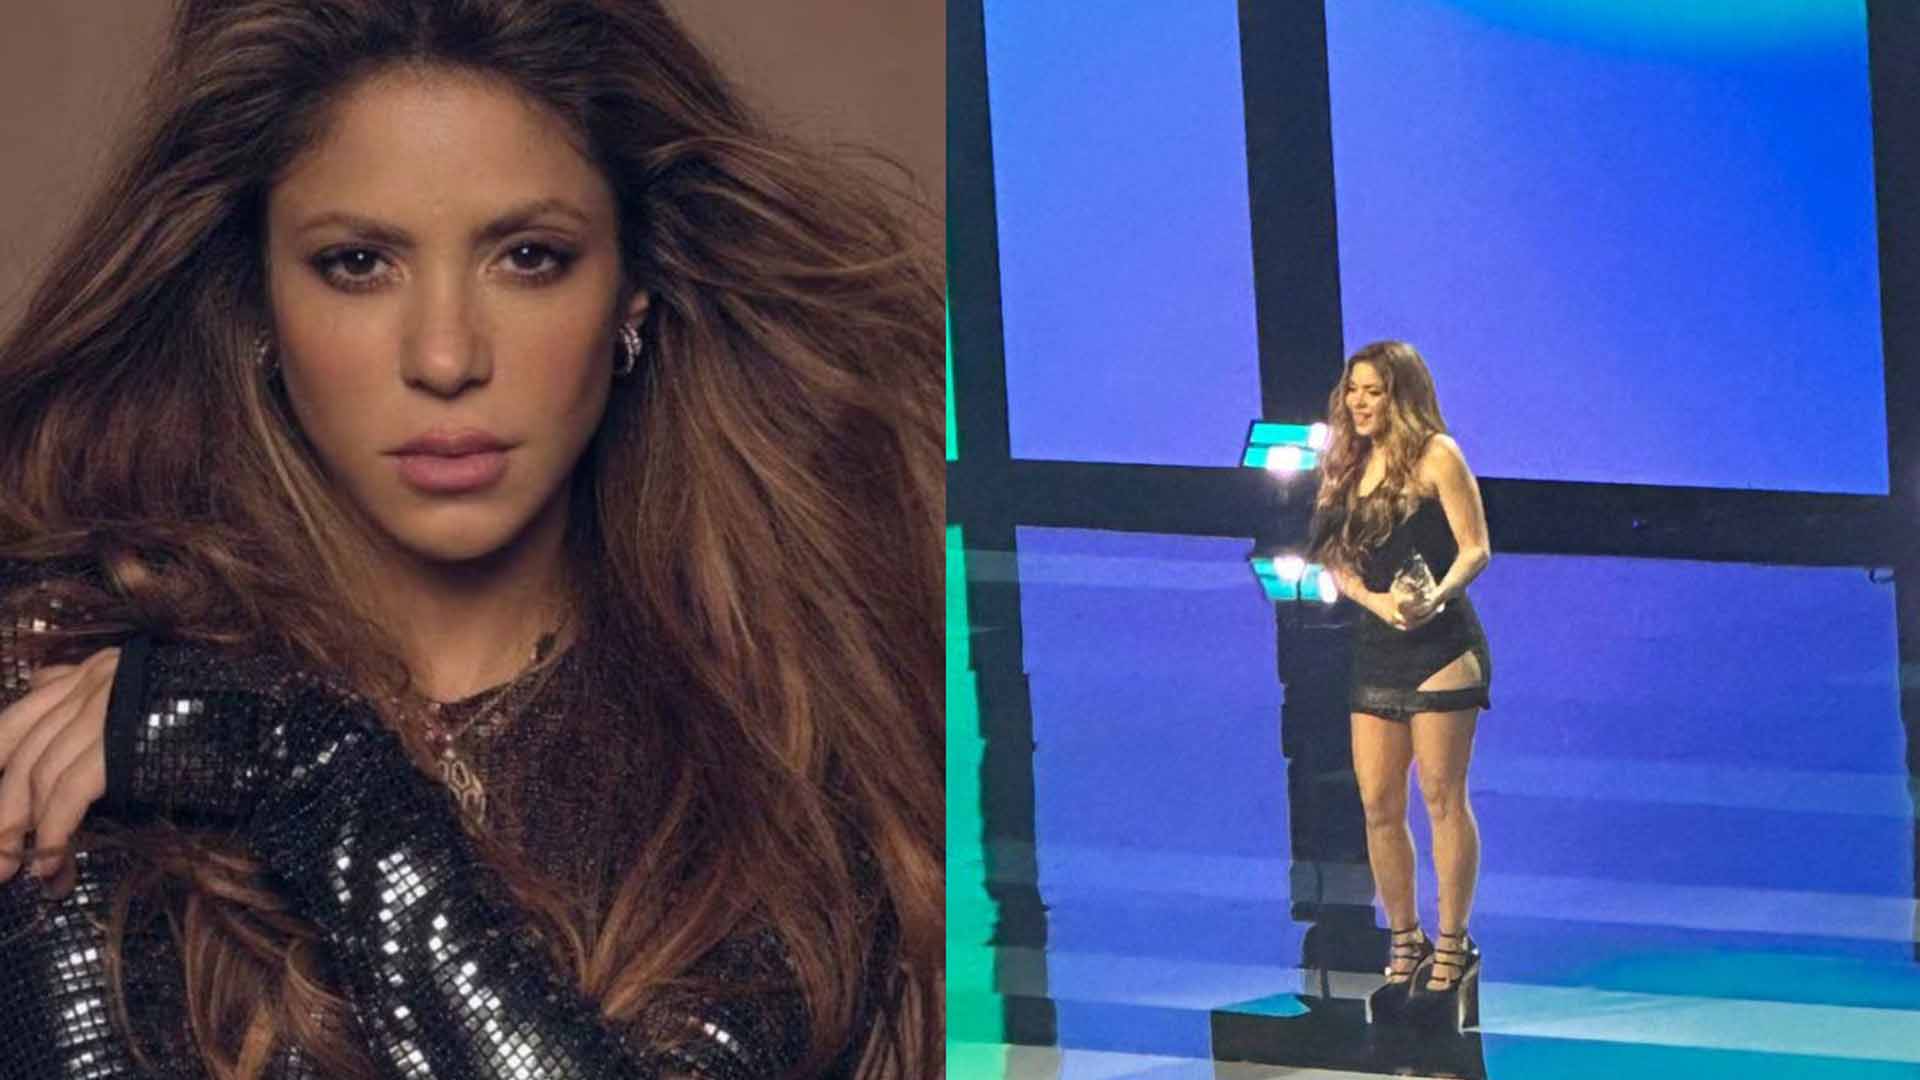 Shakira apuntó contra Piqué al recibir el "Mujer del año" de Billboard